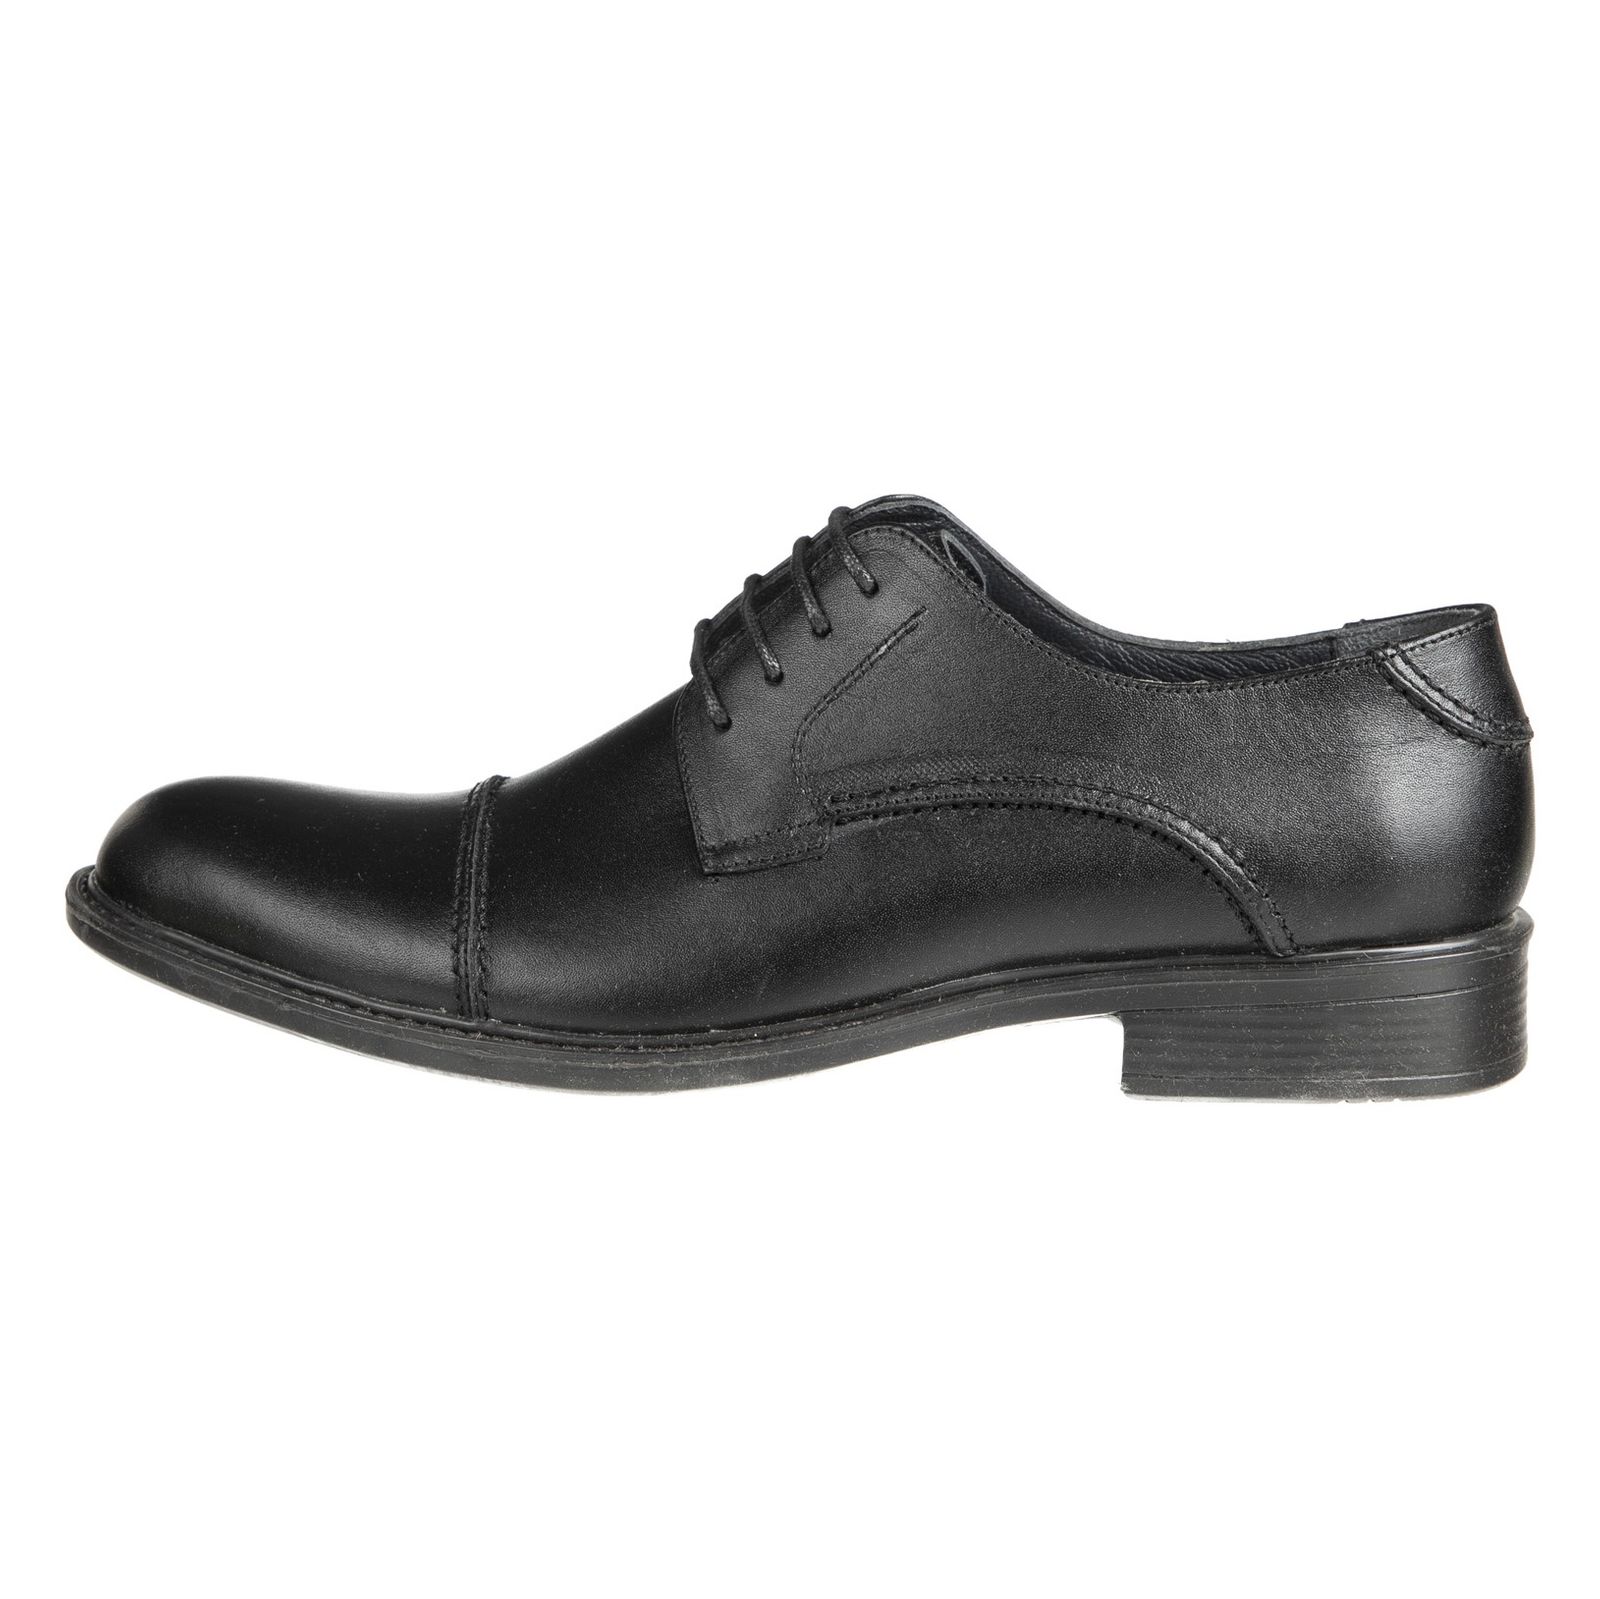 کفش مردانه دلفارد مدل 7219j503-101 - مشکی - 2